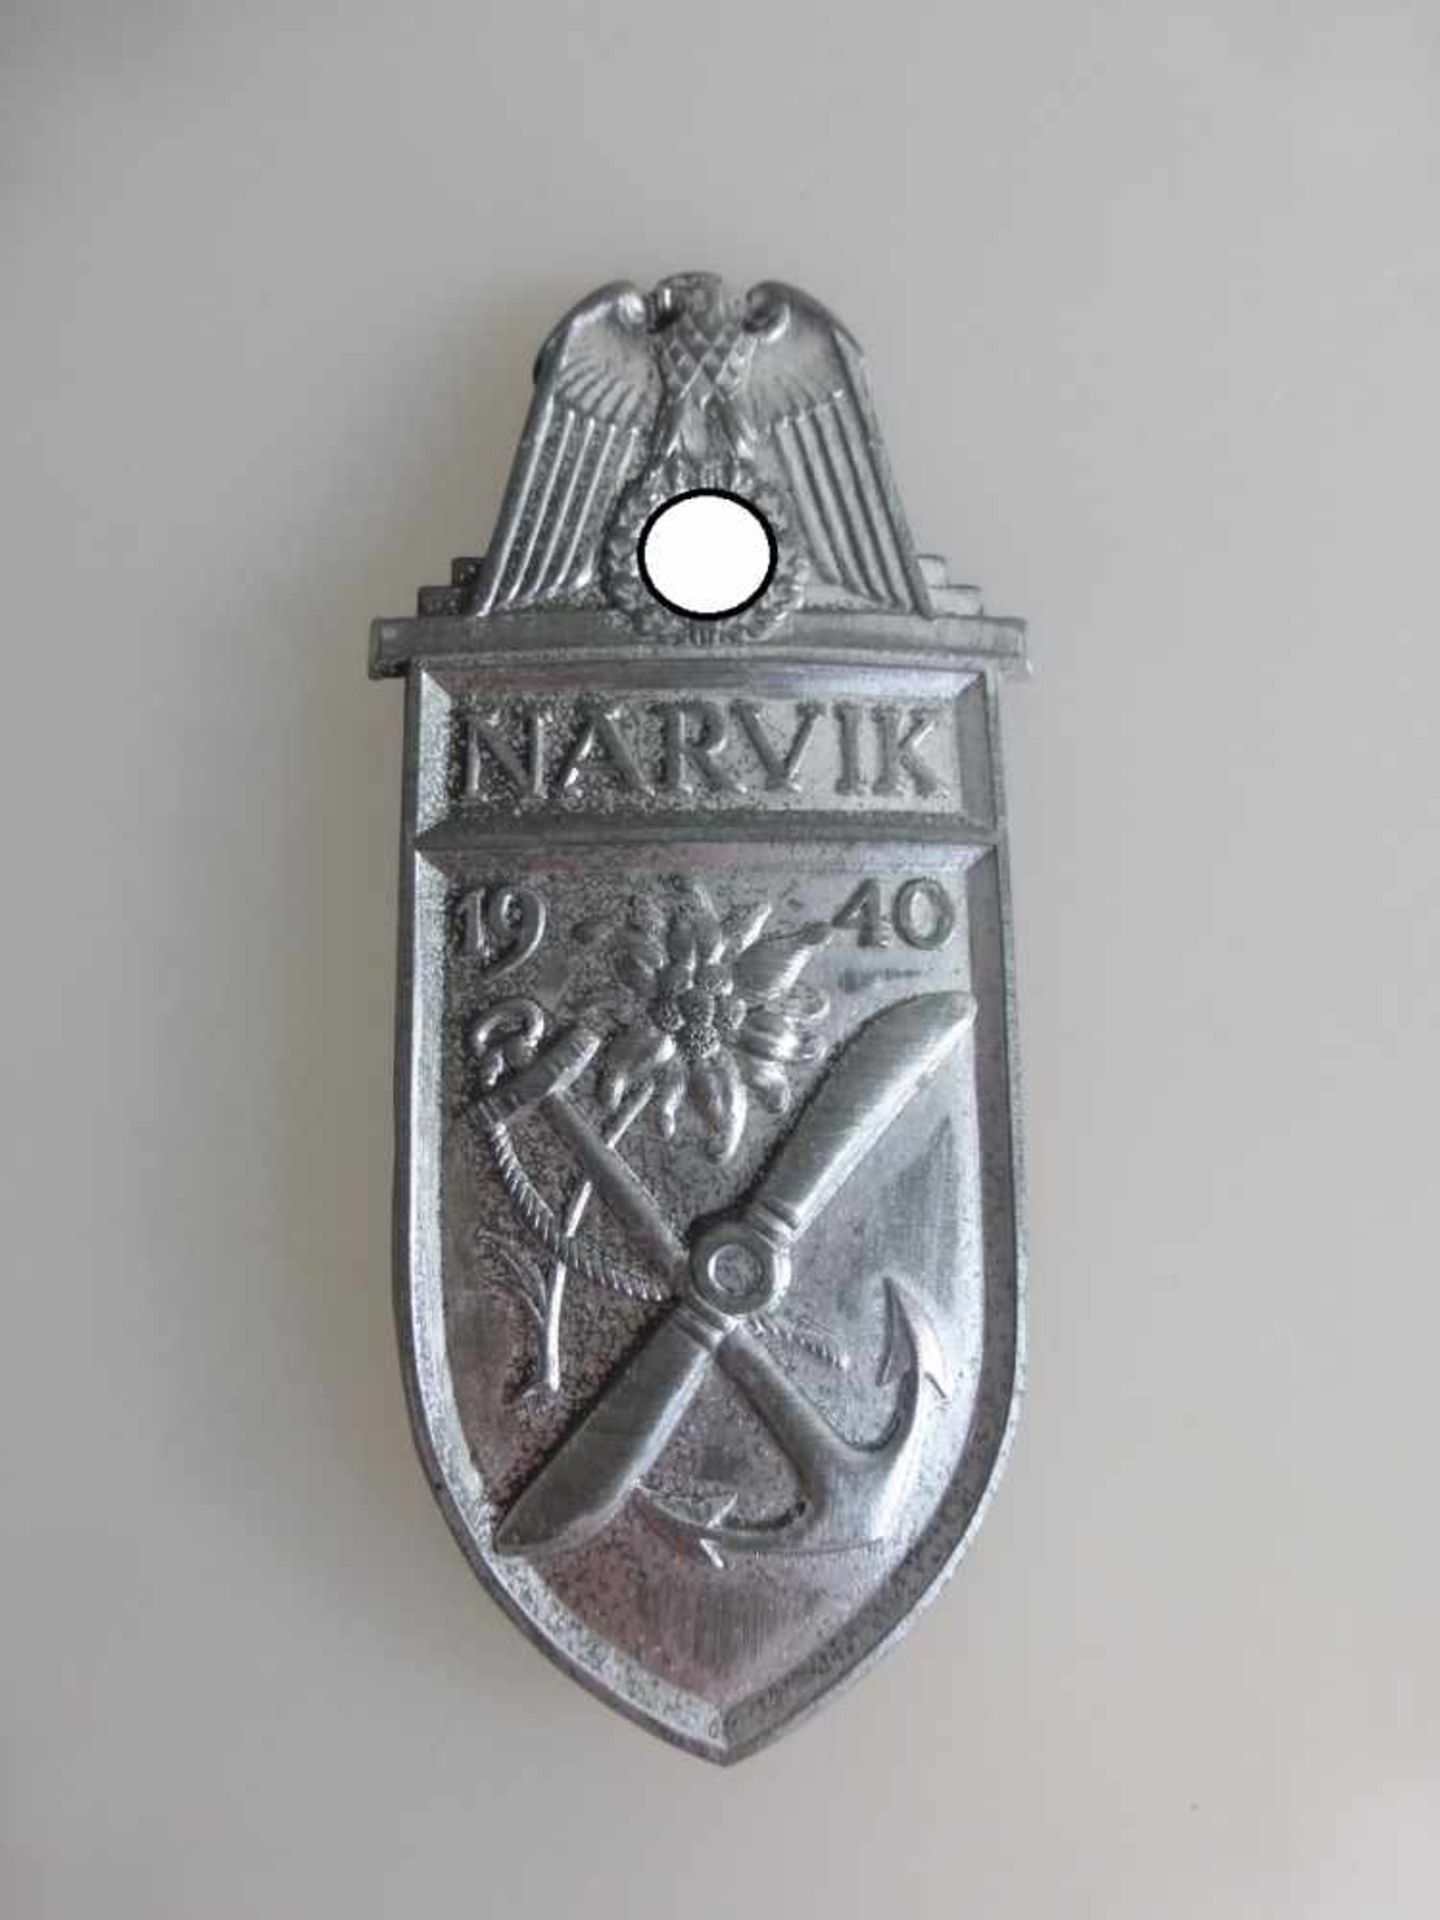 Auszeichnung "Narvik Schild" in Silber 1940, sog. 3.Reich